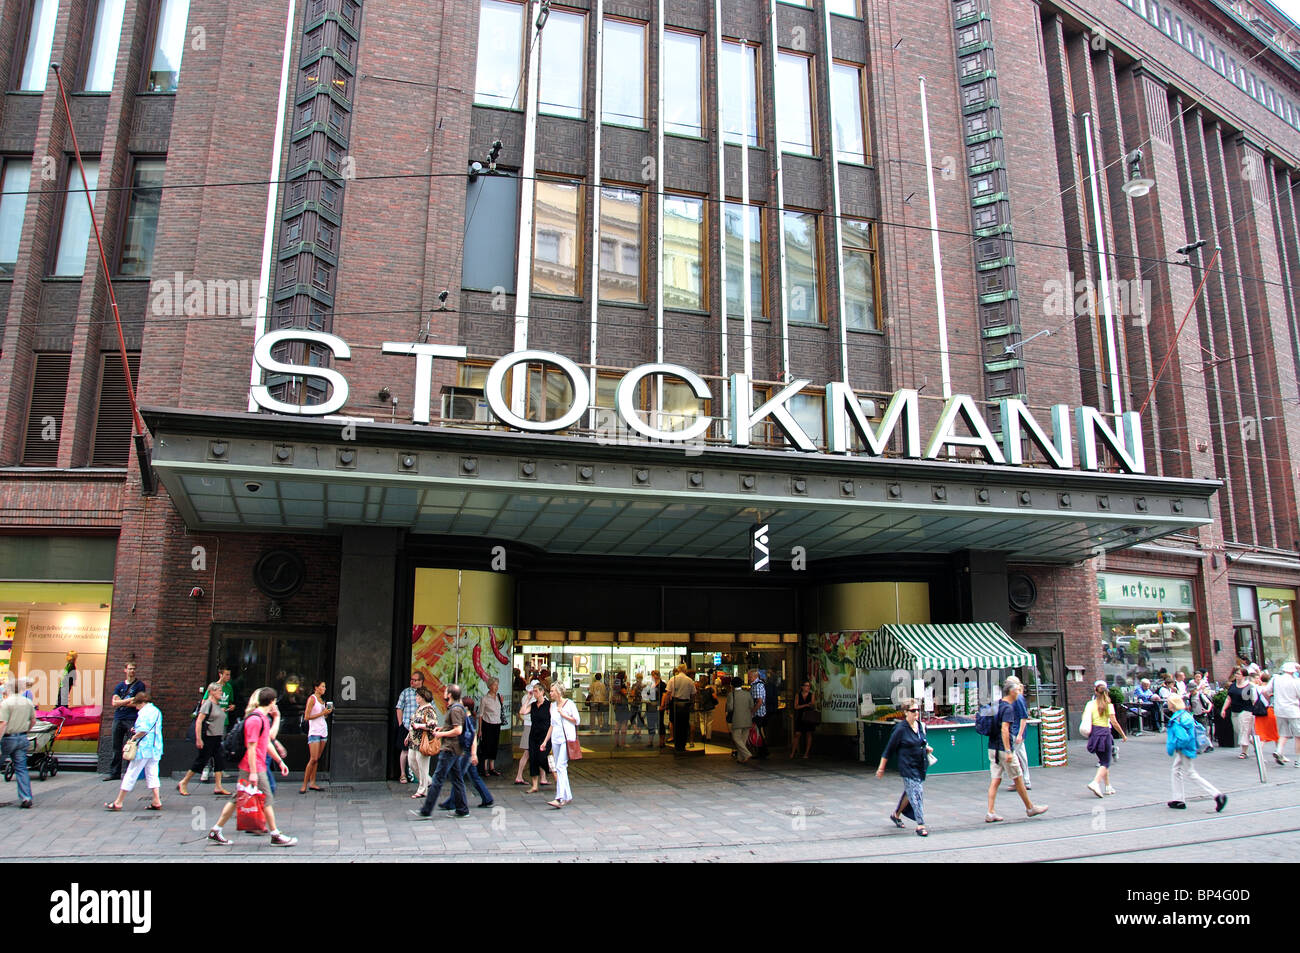 Eingang zur Region Uusimaa, Kaufhaus Stockmann, Helsinki, Finnland Stockfoto